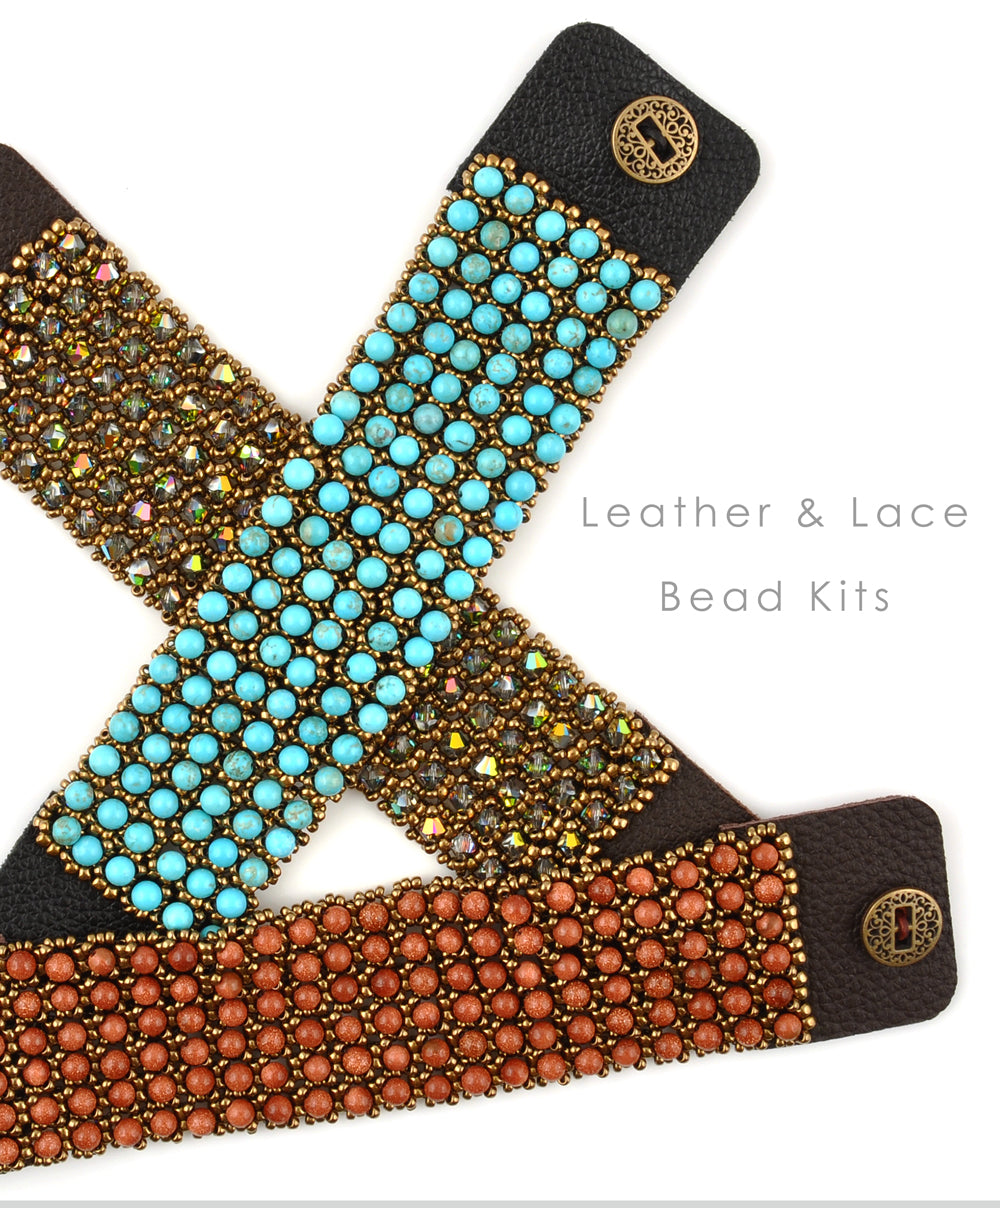 Leather and Lace Bead Kits magdakaminska